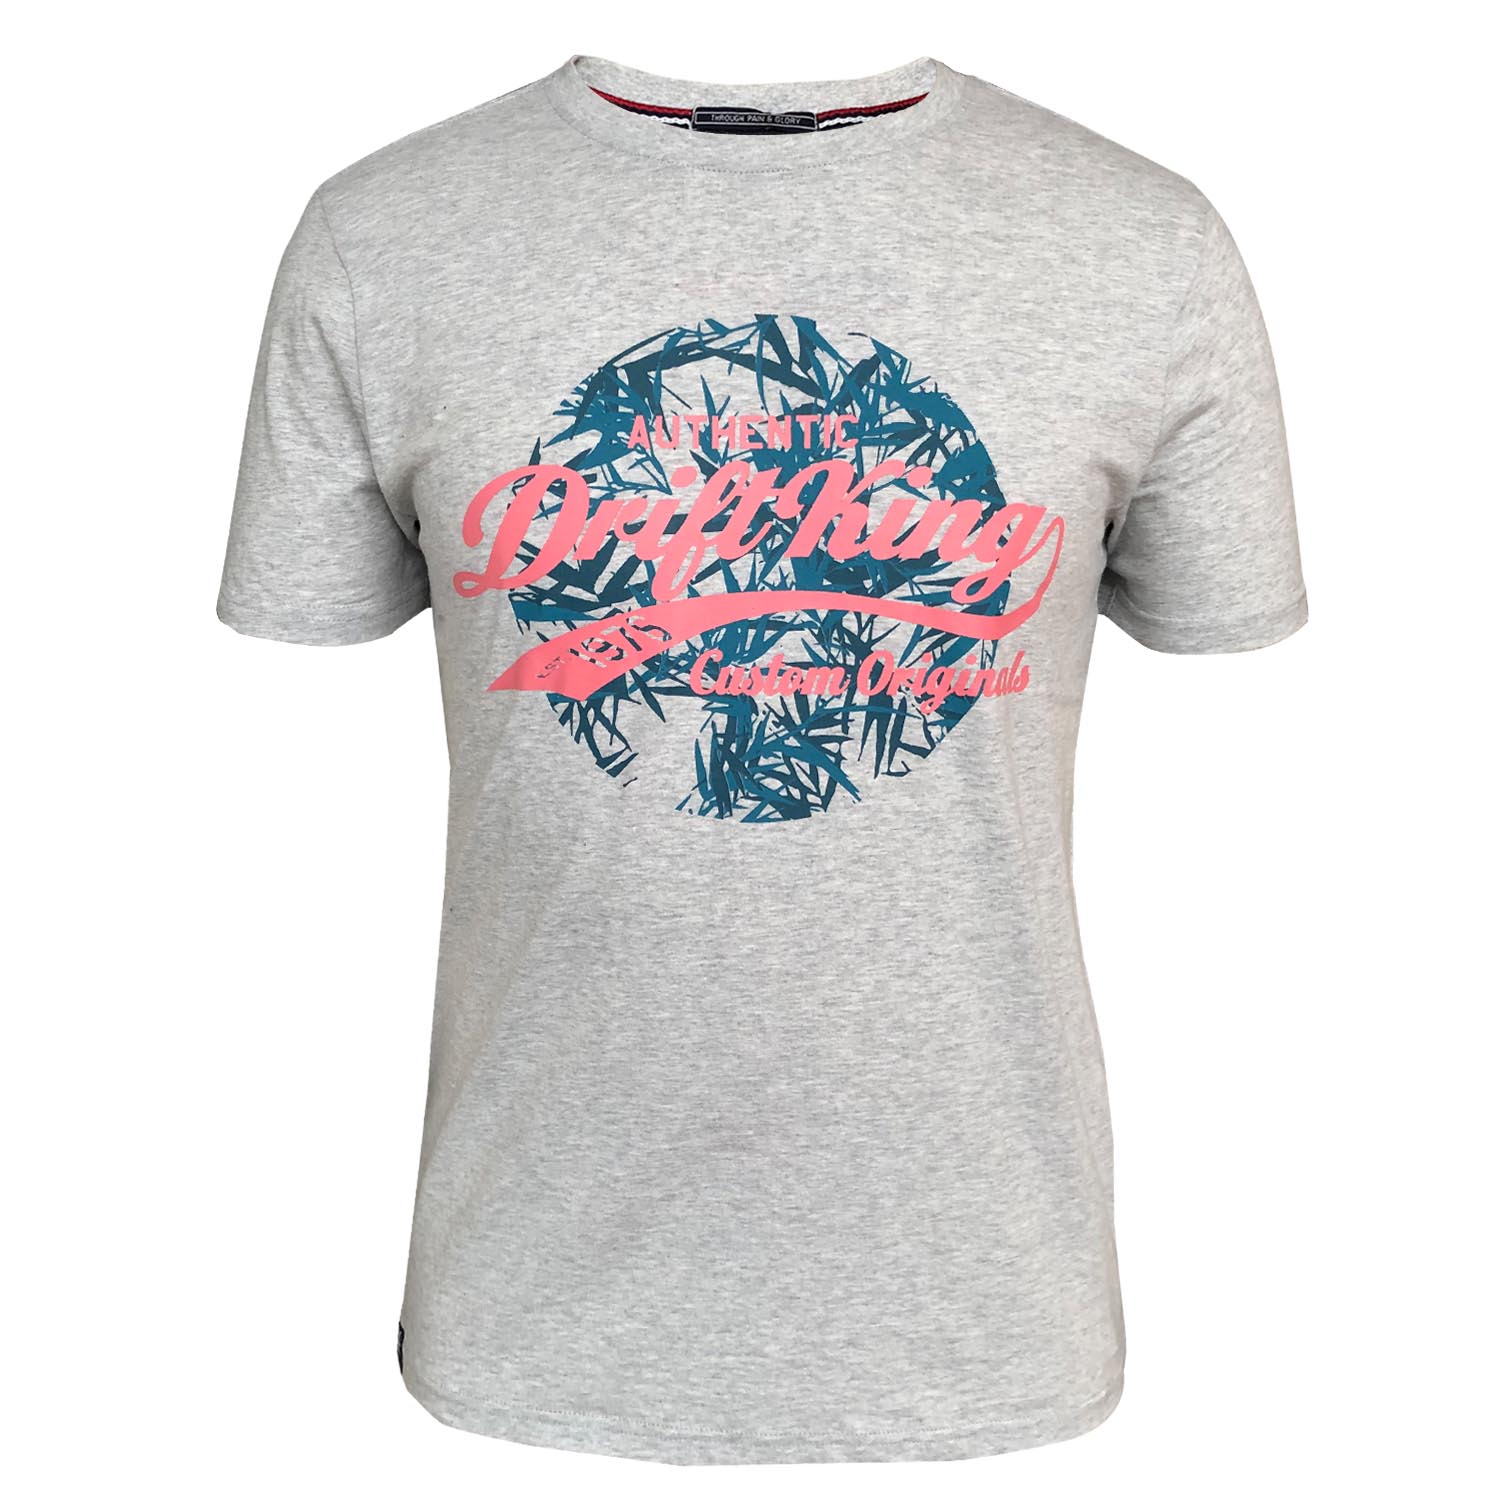 Drift King - Tropic T-Shirt - LabelledUp.com